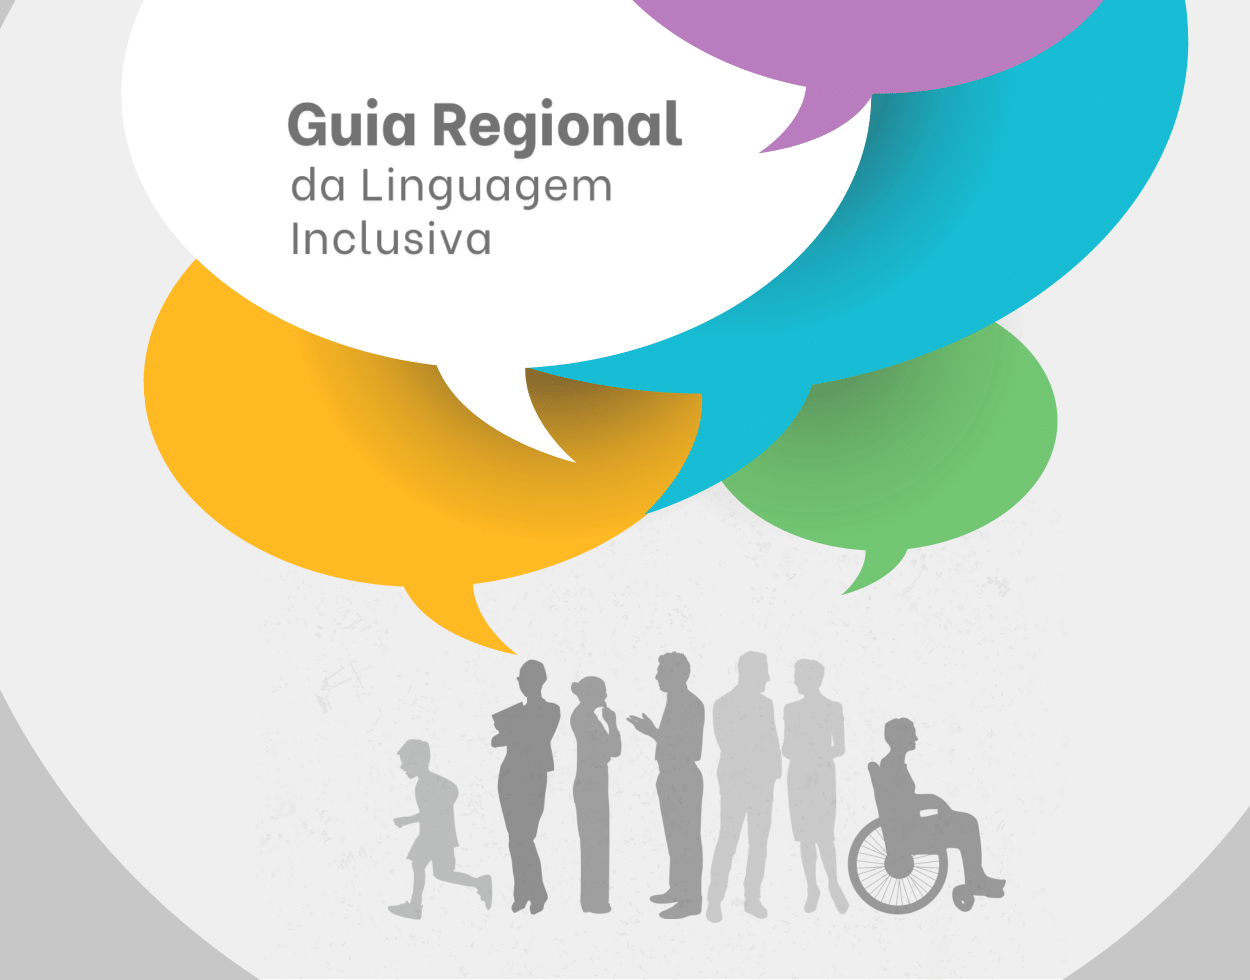 Guia Regional da Linguagem Inclusiva